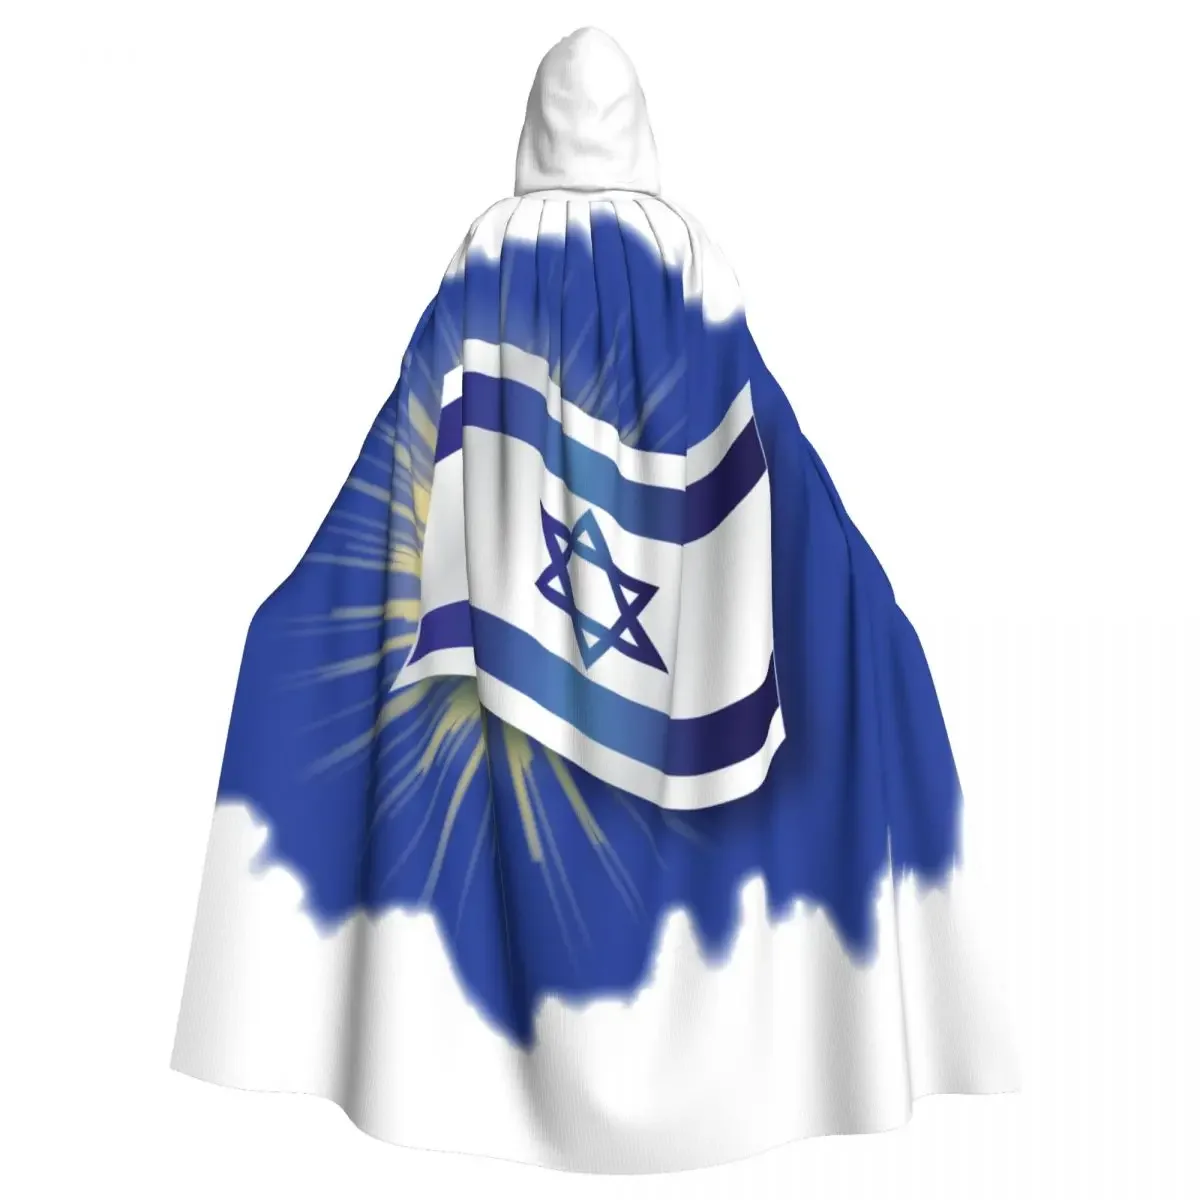 

Унисекс, взрослый, с флагом Израиля, плащ с капюшоном, длинный костюм ведьмы, косплей